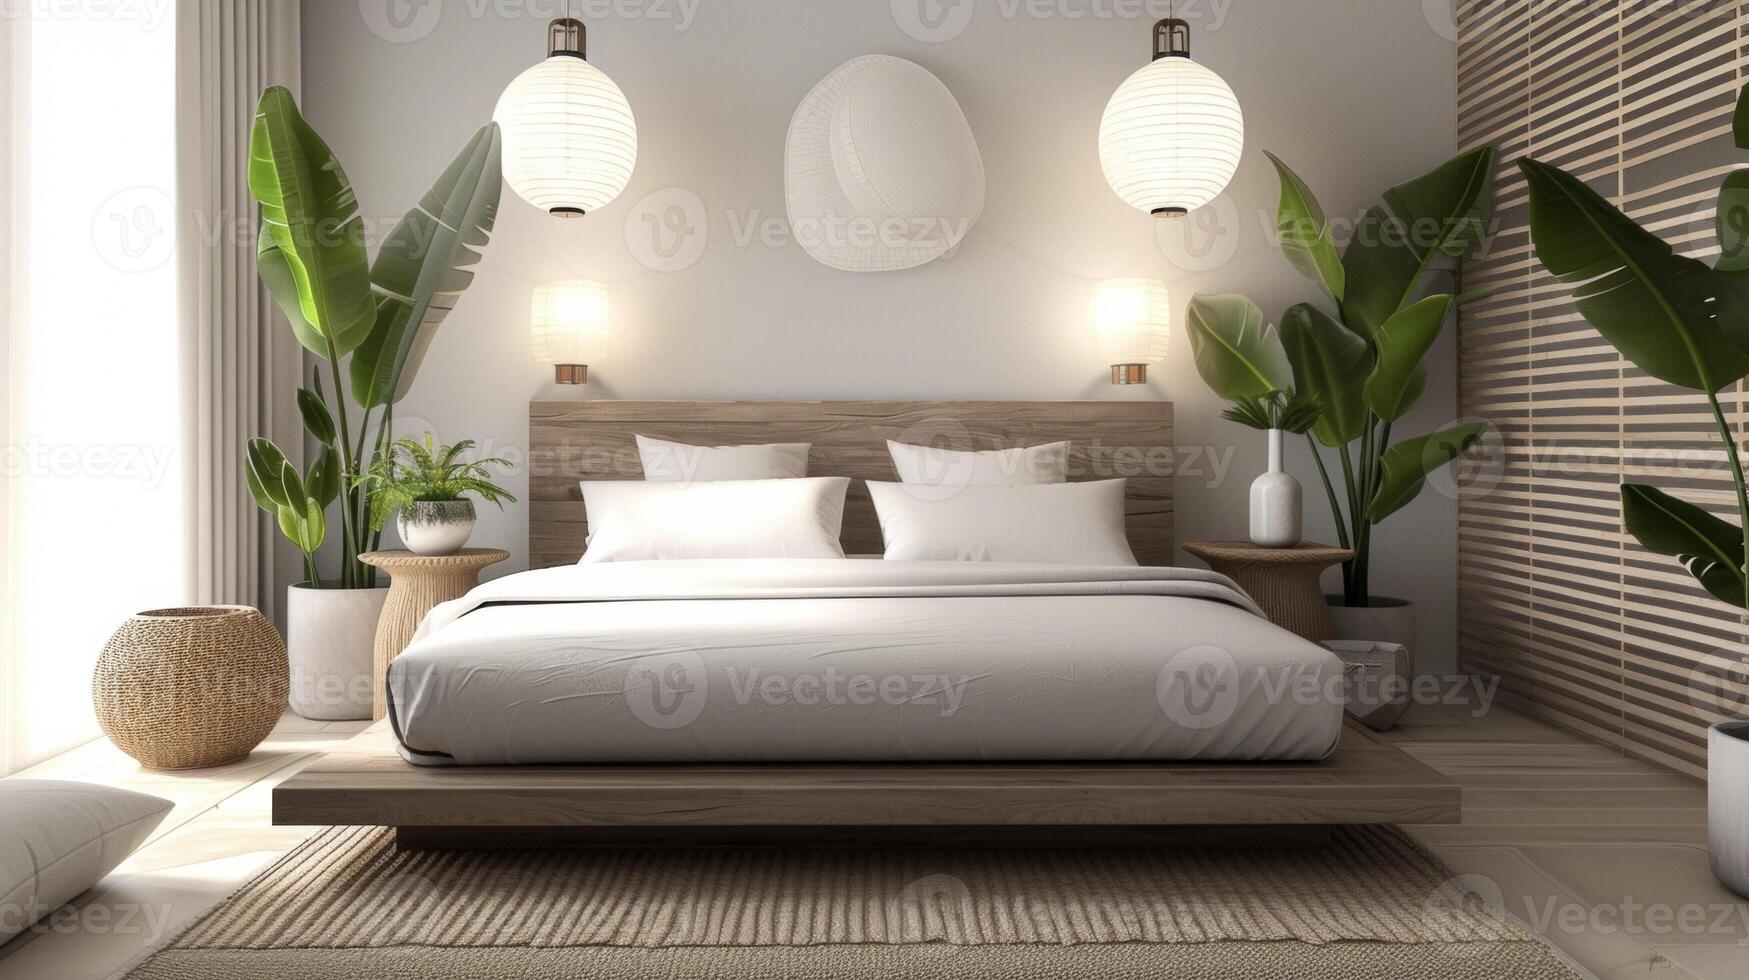 ein modern Schlafzimmer mit ein Mischung von japanisch und skandinavisch Einflüsse mit ein niedrig Plattform Bett Papier Laternen und natürlich Elemente mögen Pflanzen und ein Bambus Teppich. das insgesamt foto